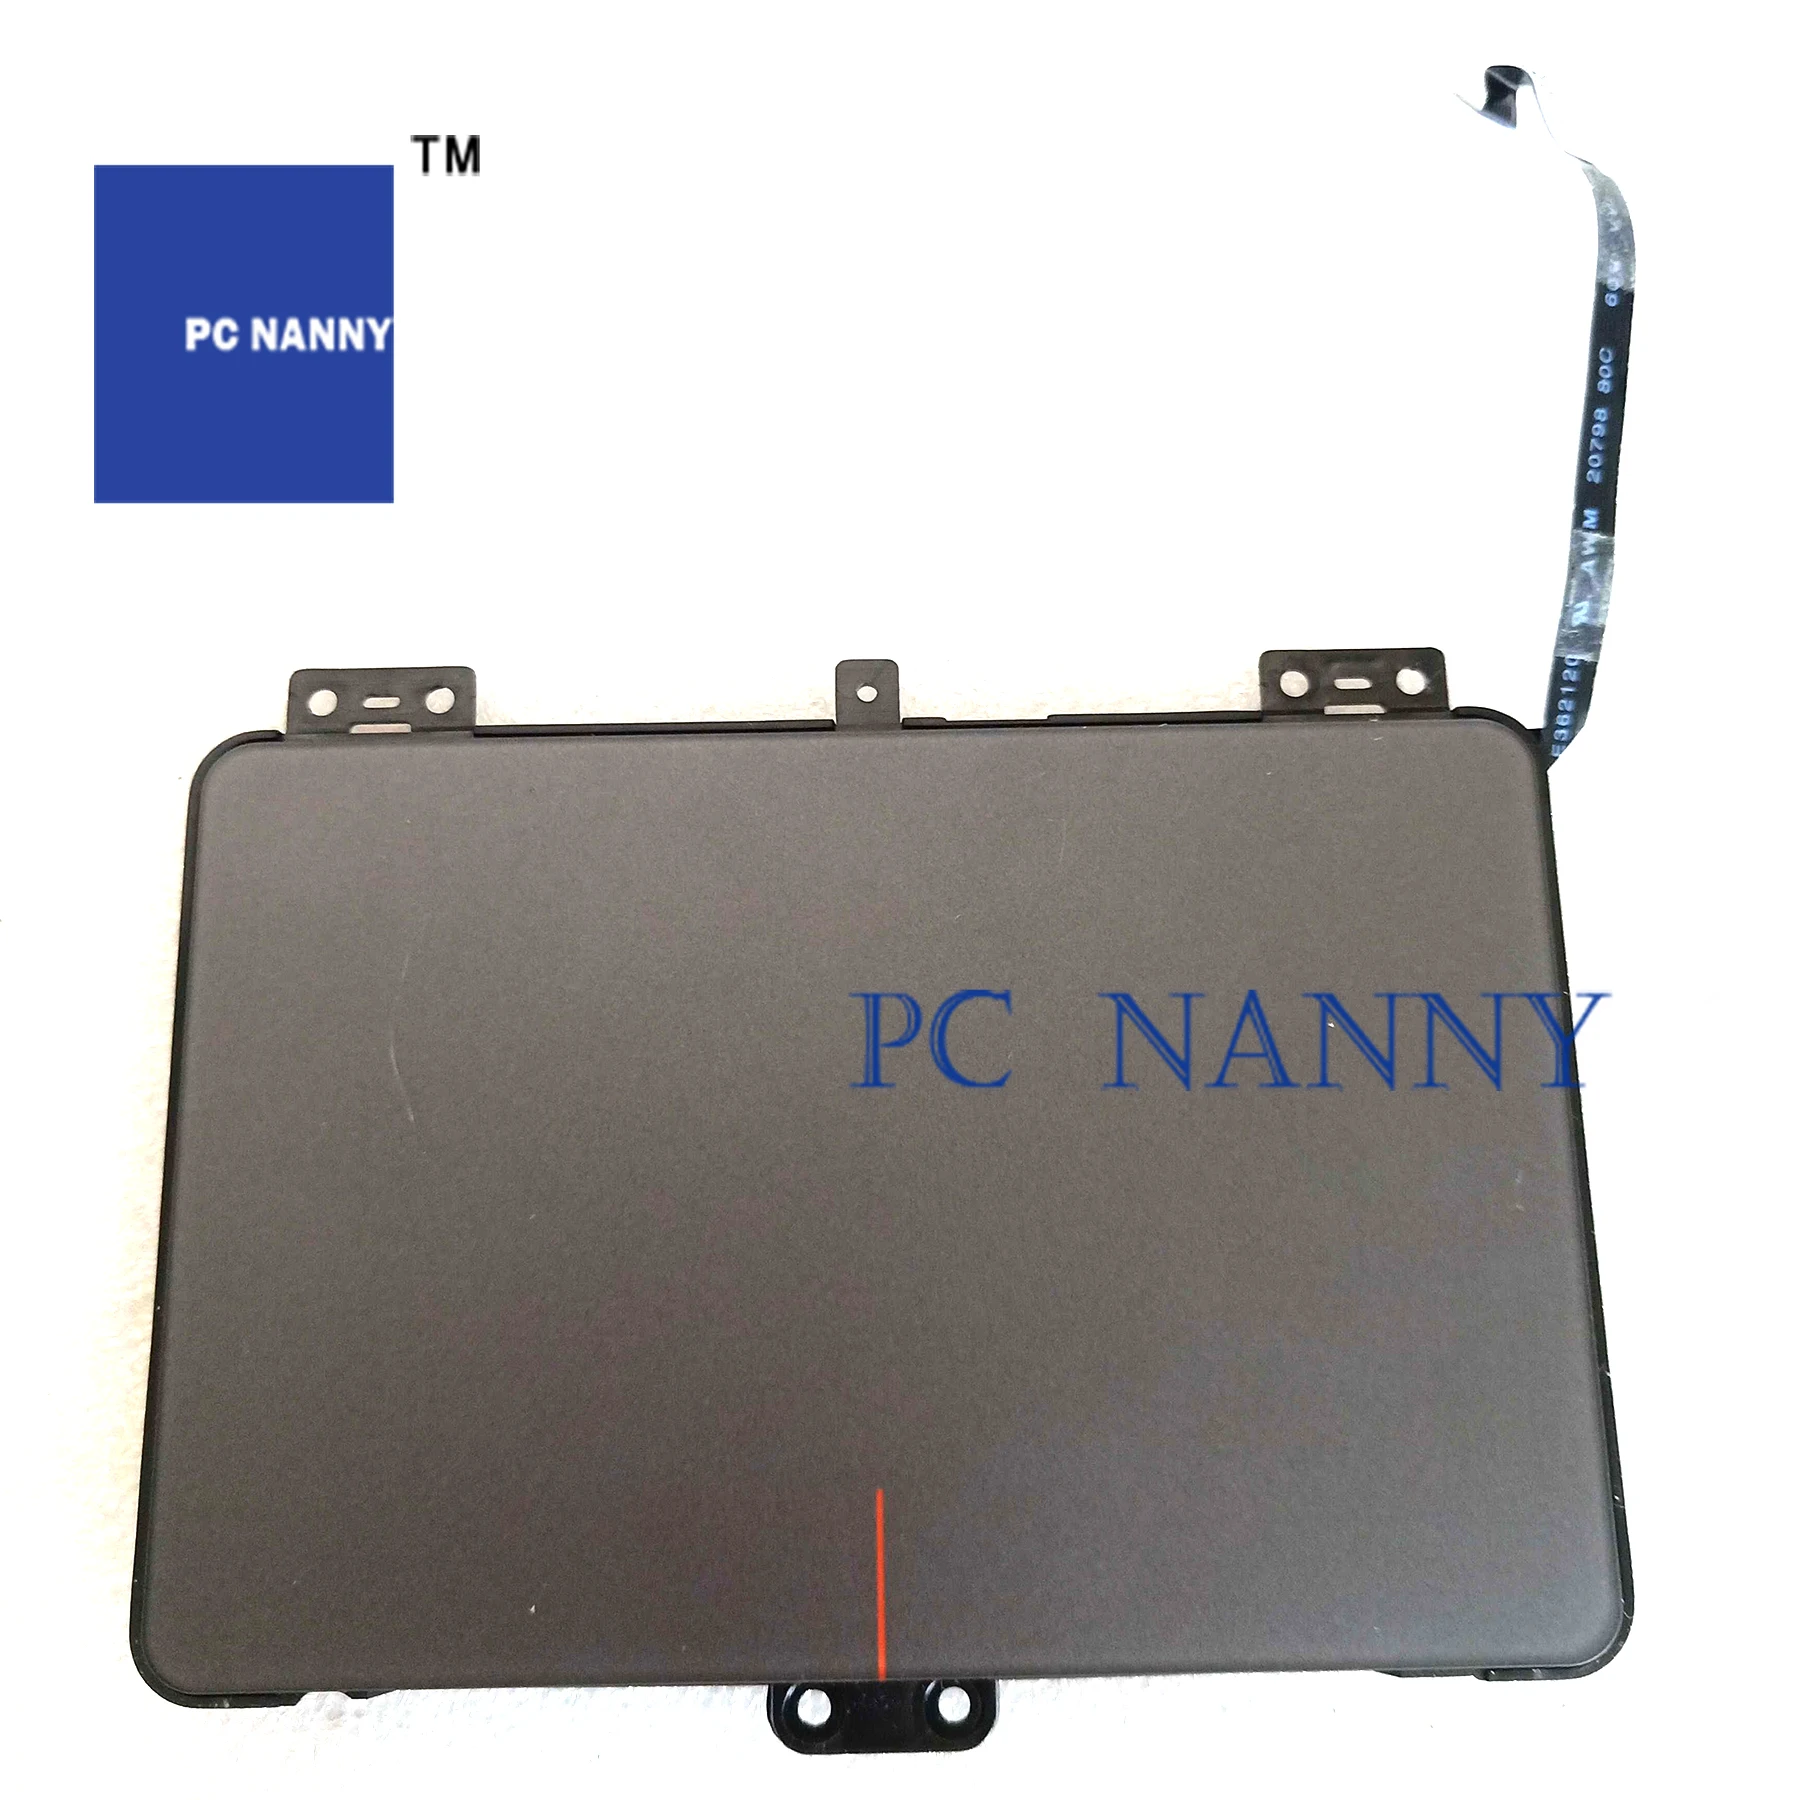 PCNANNY FOR 330C-14IKB 330c-14 330S-15IKB 330S-15 touchpad 5sb0r07221 speakers HDD drive NBX0001MJ00 usb Board 5C50R07374